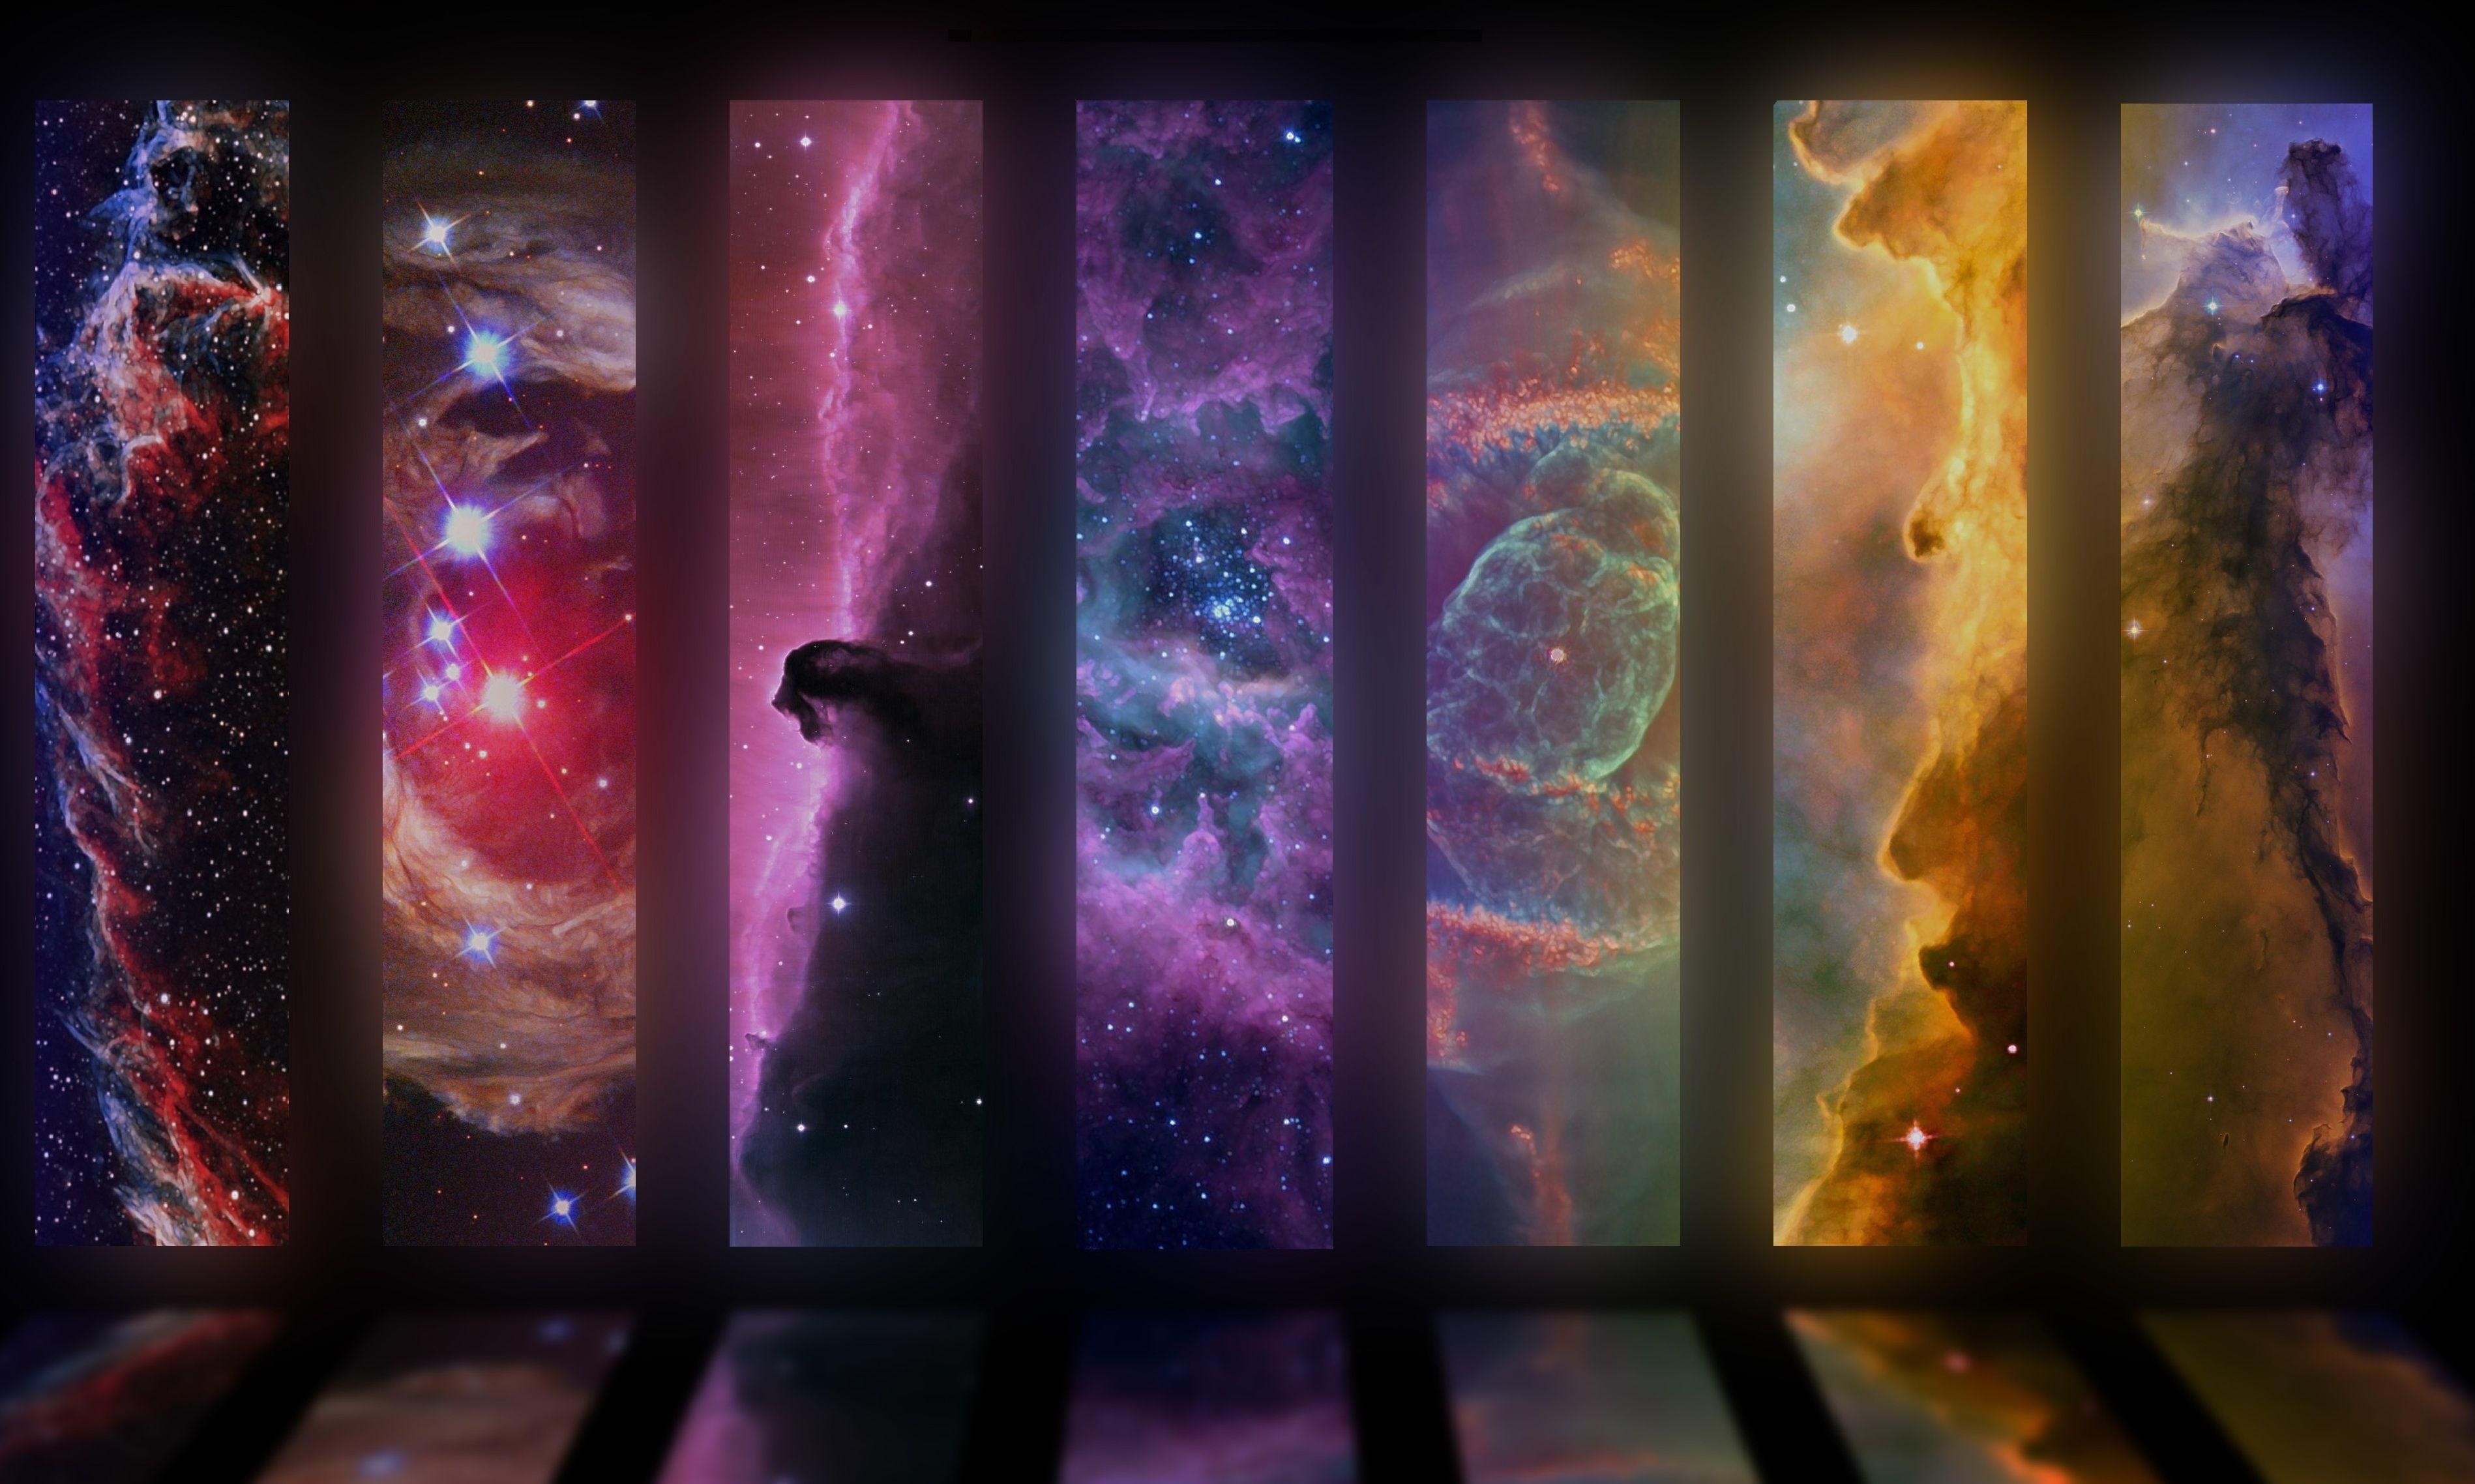 Nebula Wallpaper HD Background, Image, Pics, Photo Free Download